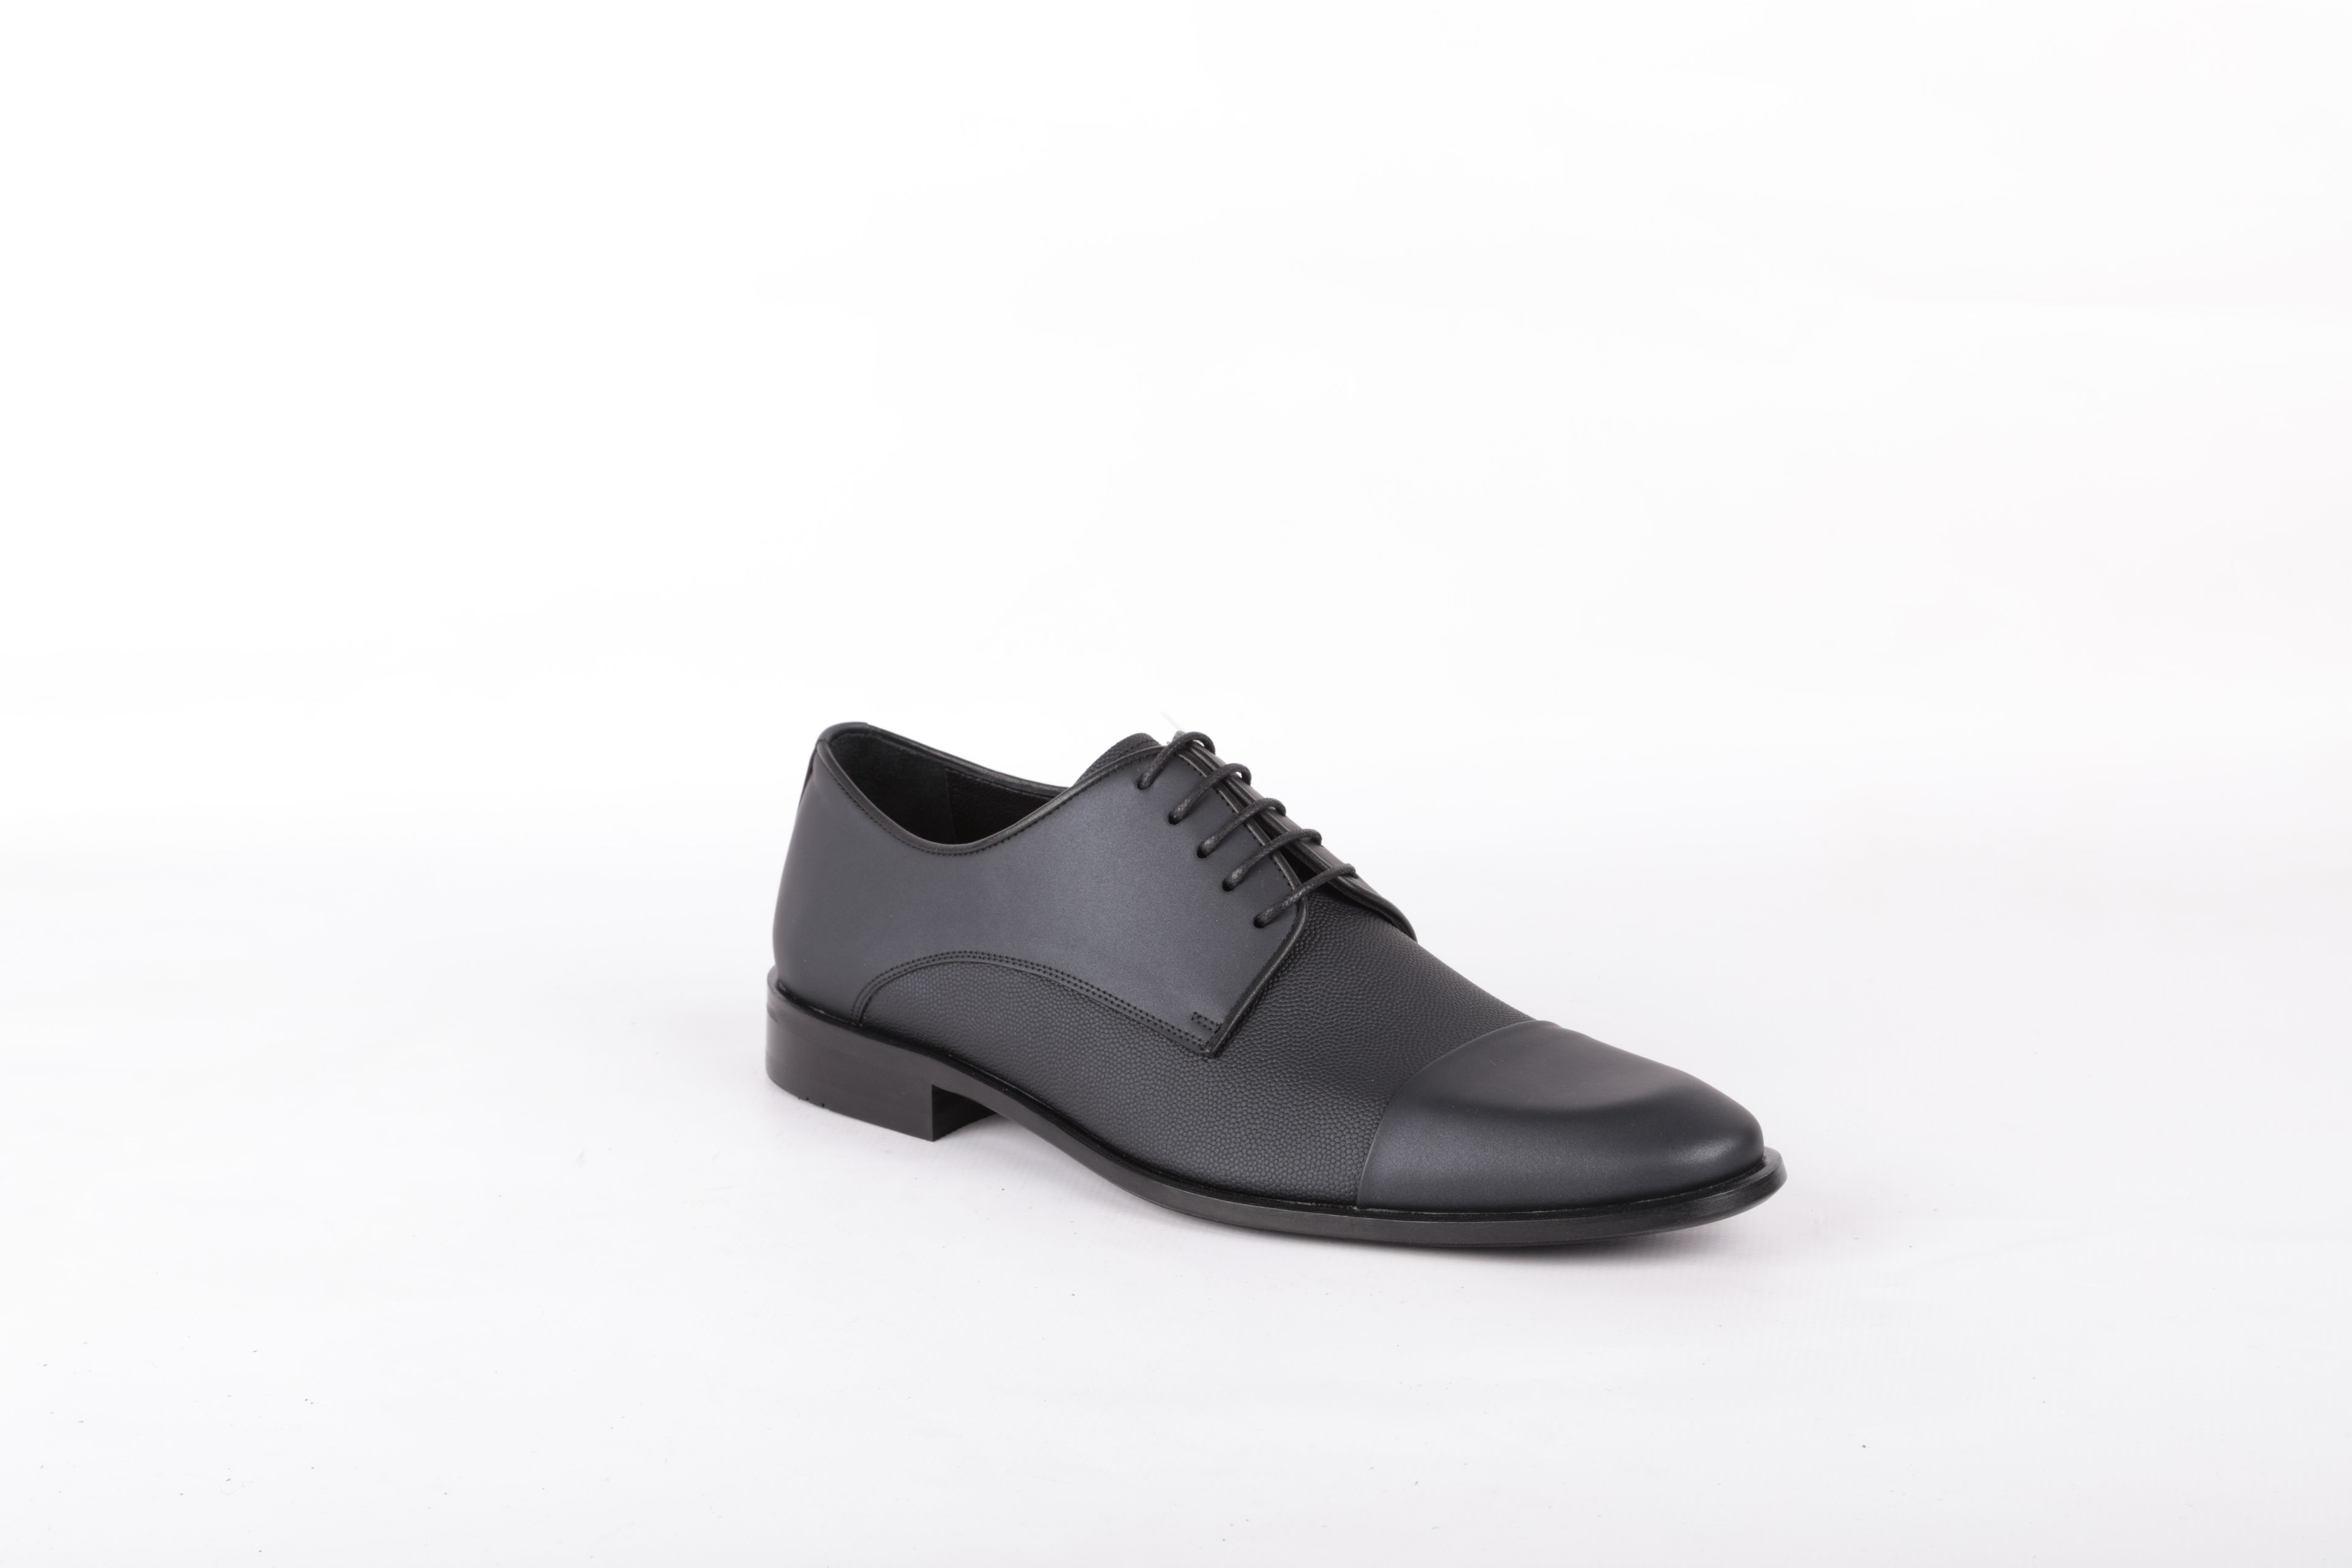 Libero 2474 Klasik Erkek Ayakkabı - SIYAH